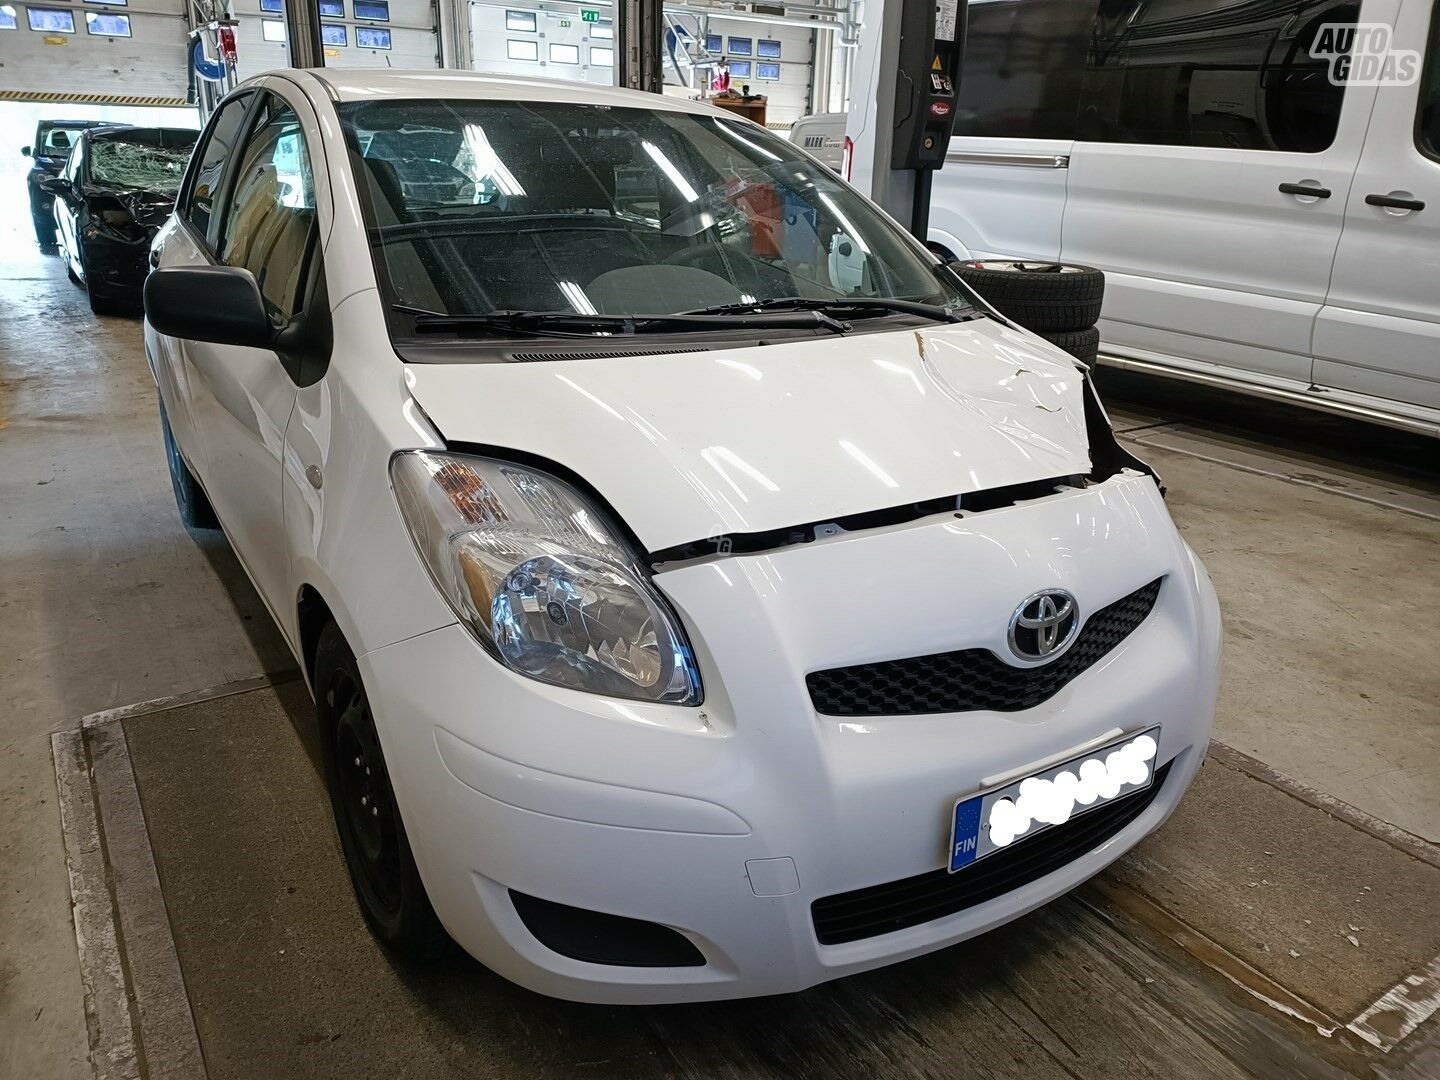 Toyota Yaris 2010 г запчясти